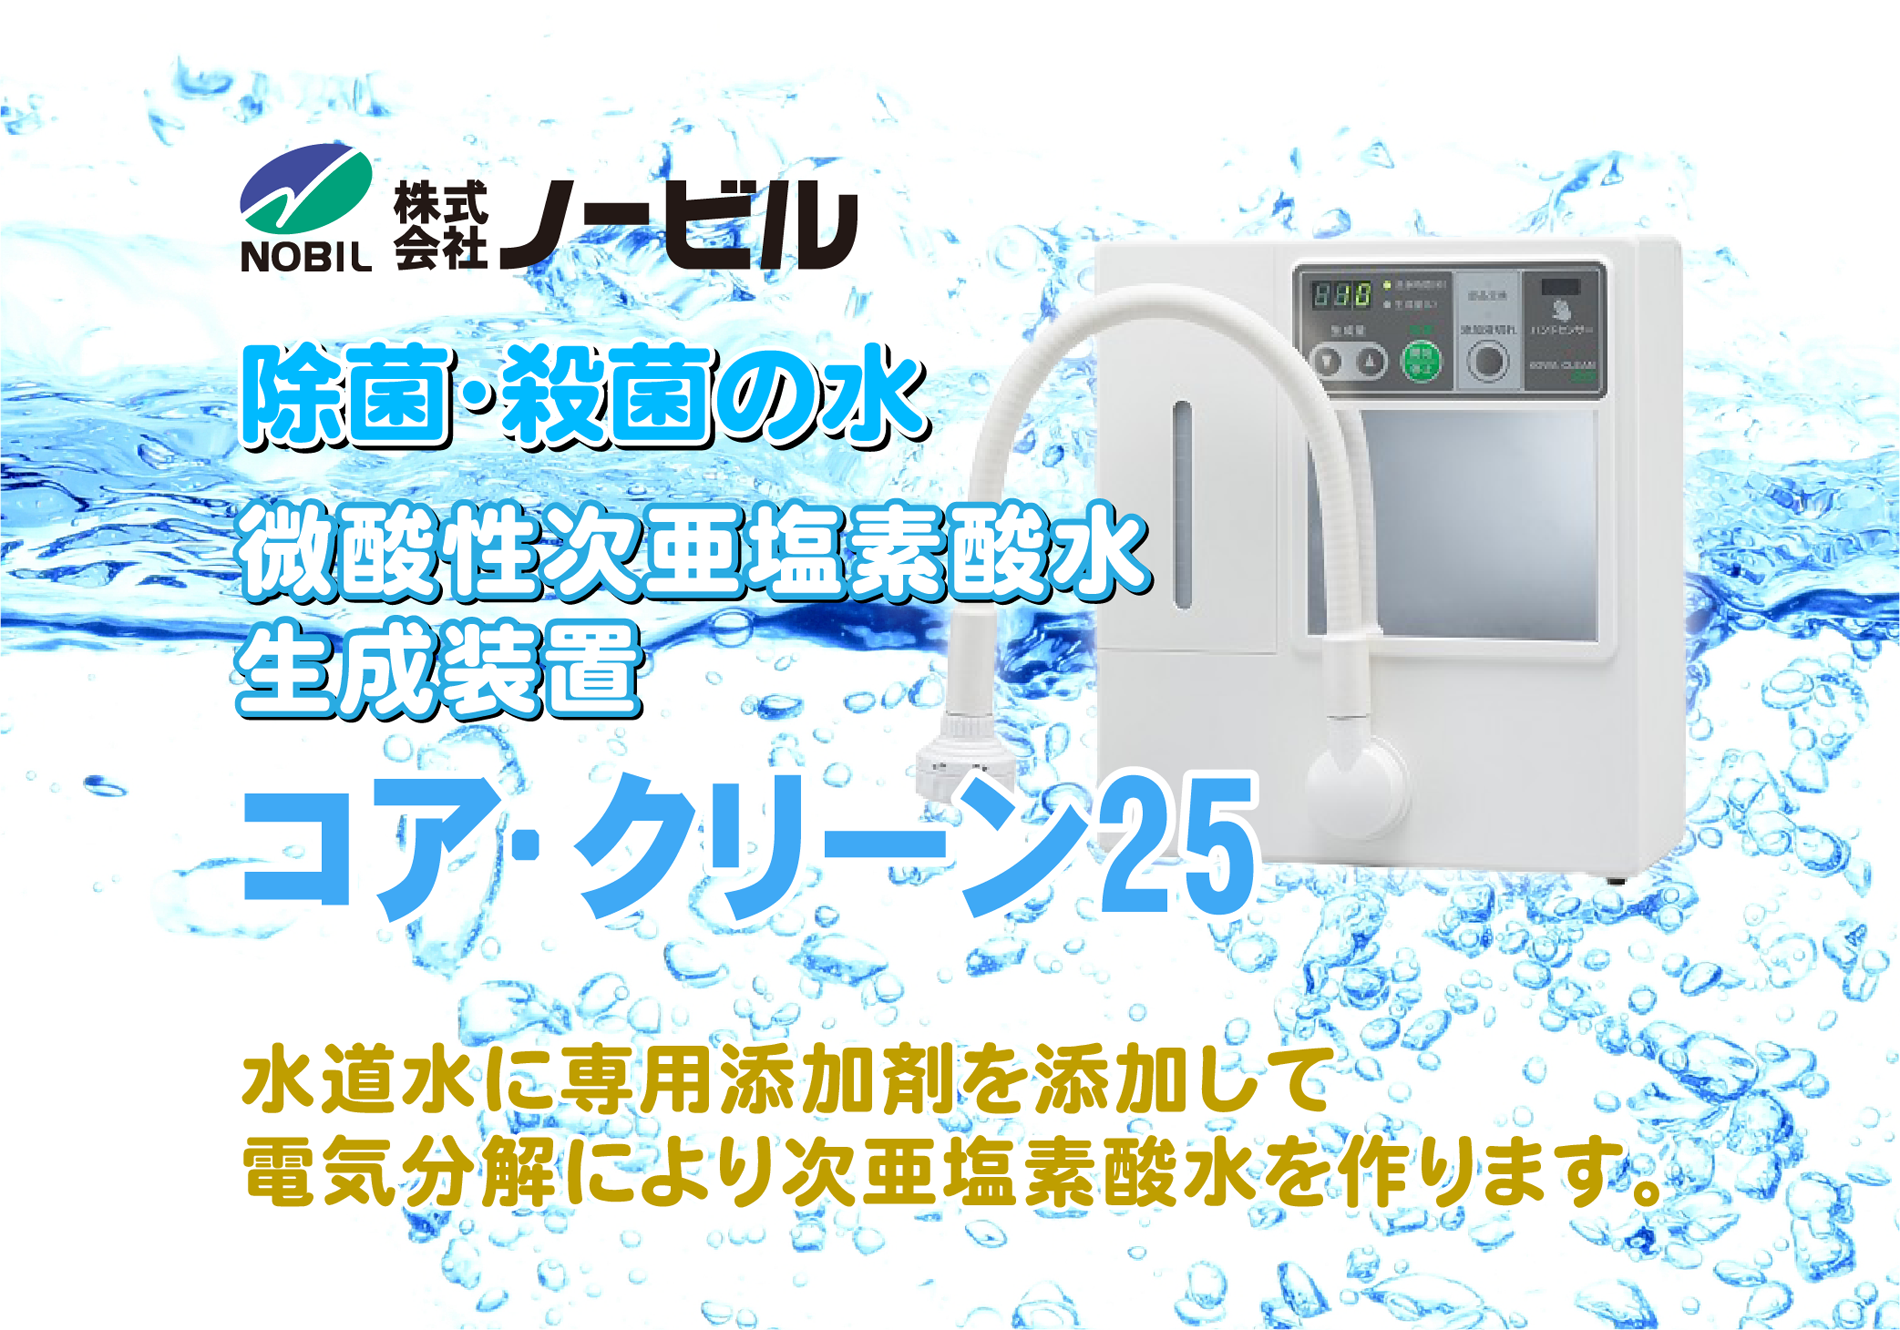 微酸性電解水生成装置「コア・クリーン25」専用サイトを公開しました | 愛知県,岡崎市,豊橋市,豊川市 | 株式会社ノービル